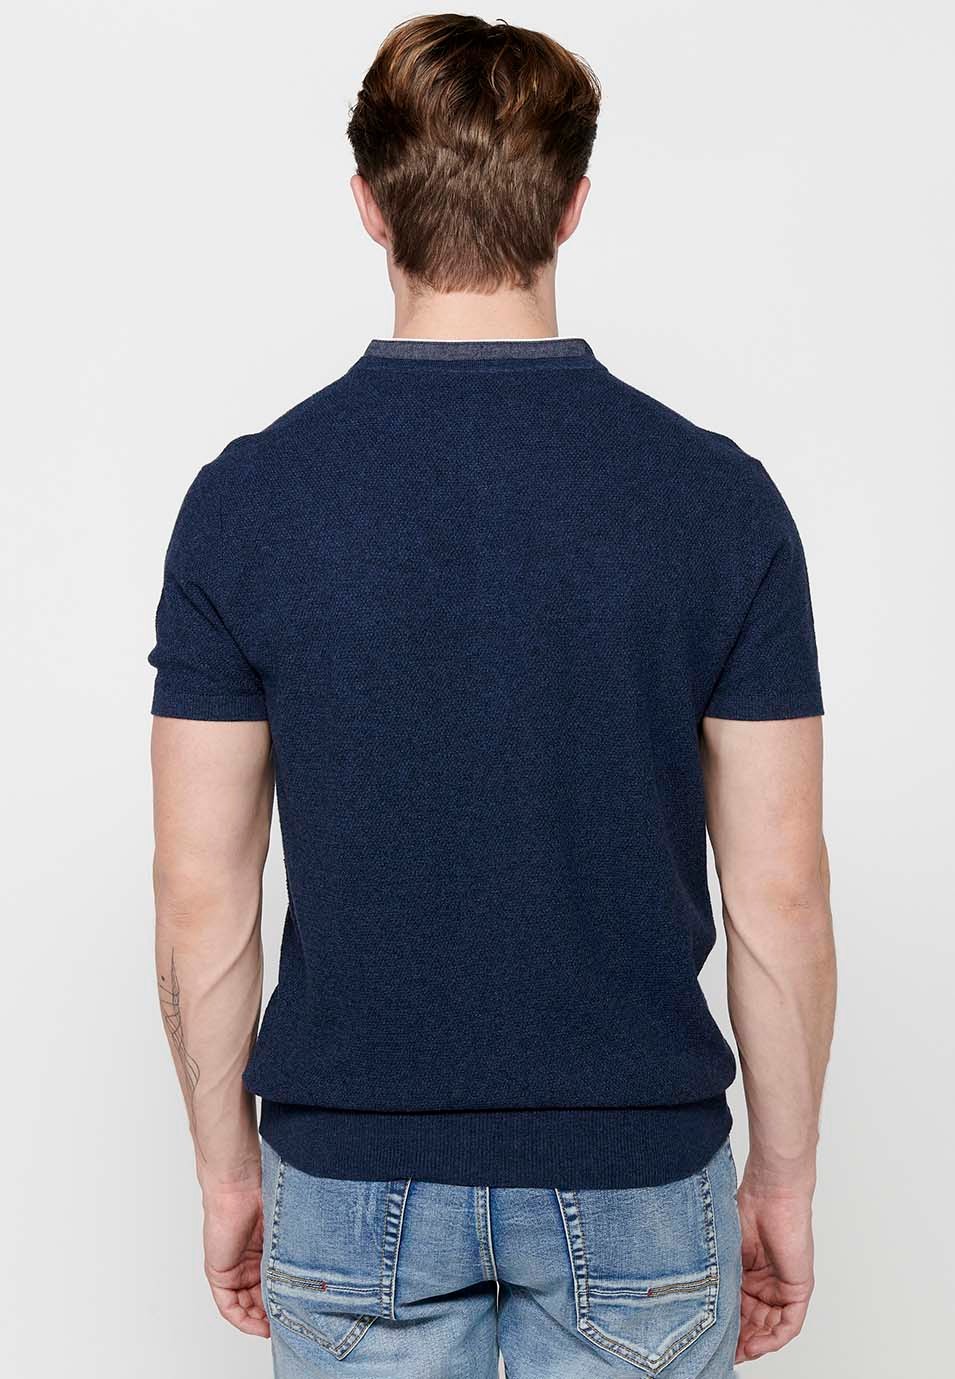 Kurzarm-Poloshirt aus Baumwolle mit Rundhalsausschnitt und geknöpfter Öffnung in strukturierter Marineblau-Farbe für Herren